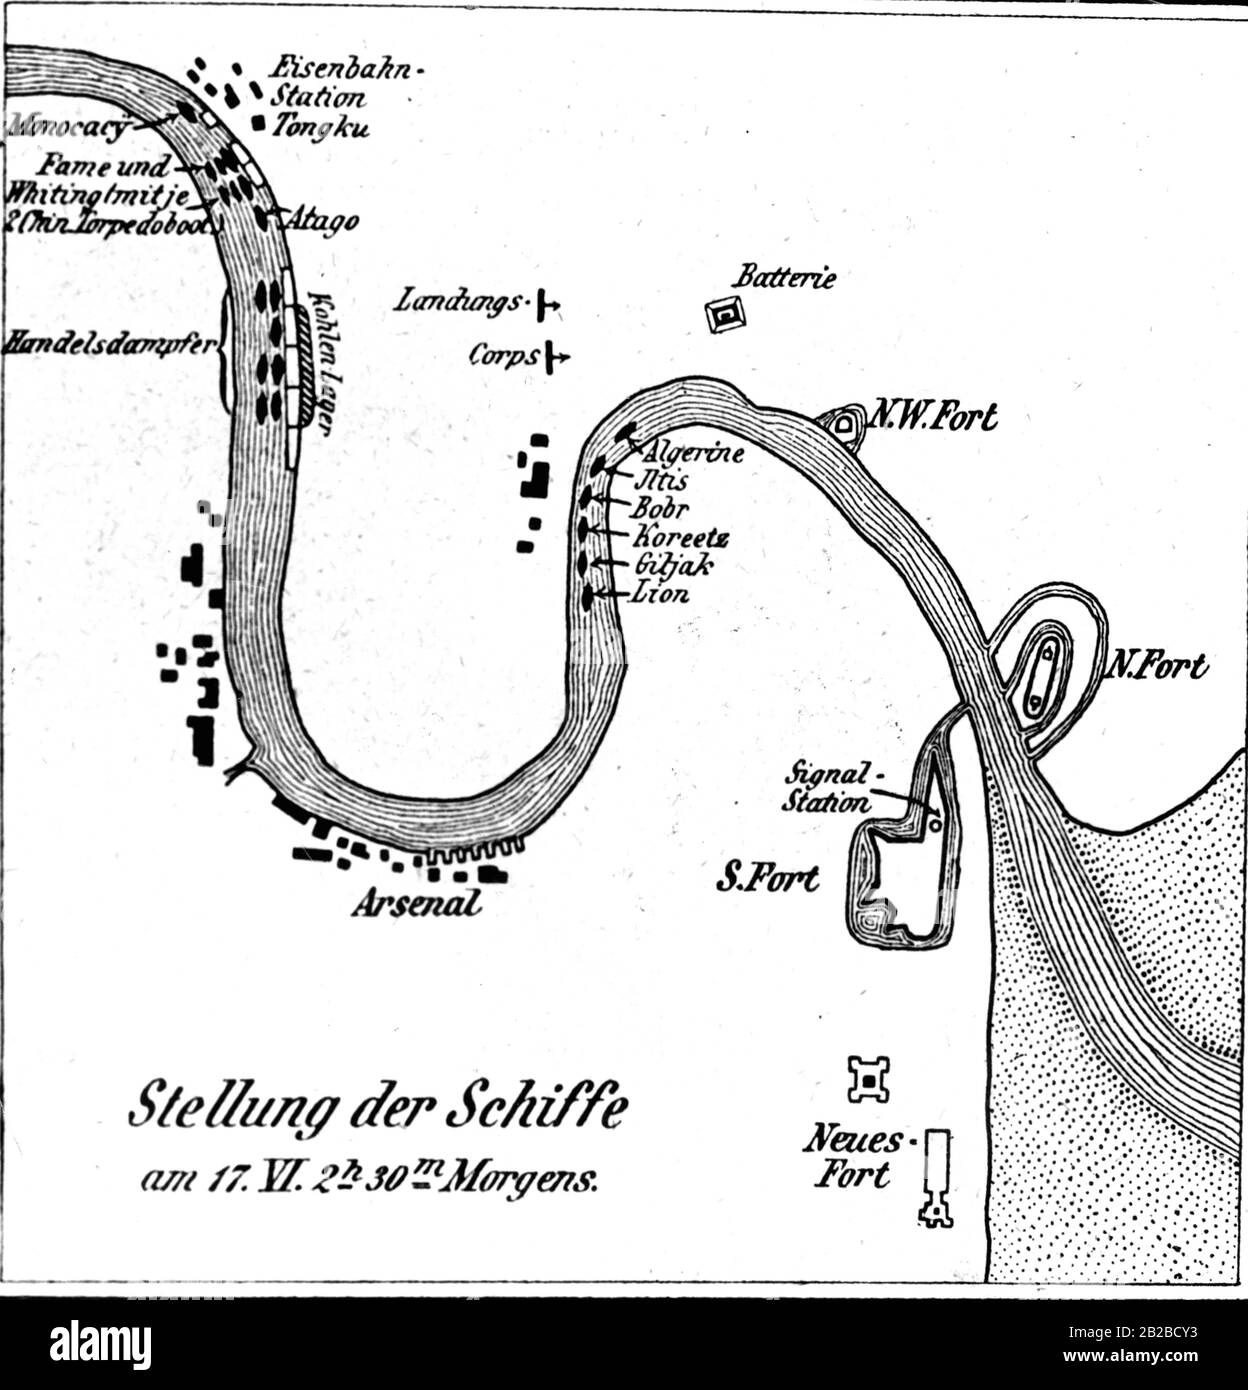 Ein Abschnitt der Karte mit den wichtigen Forts und der Position der europäischen Schiffe während des Boxeraufstands am 17. Juni um 2.30 Uhr. Stockfoto